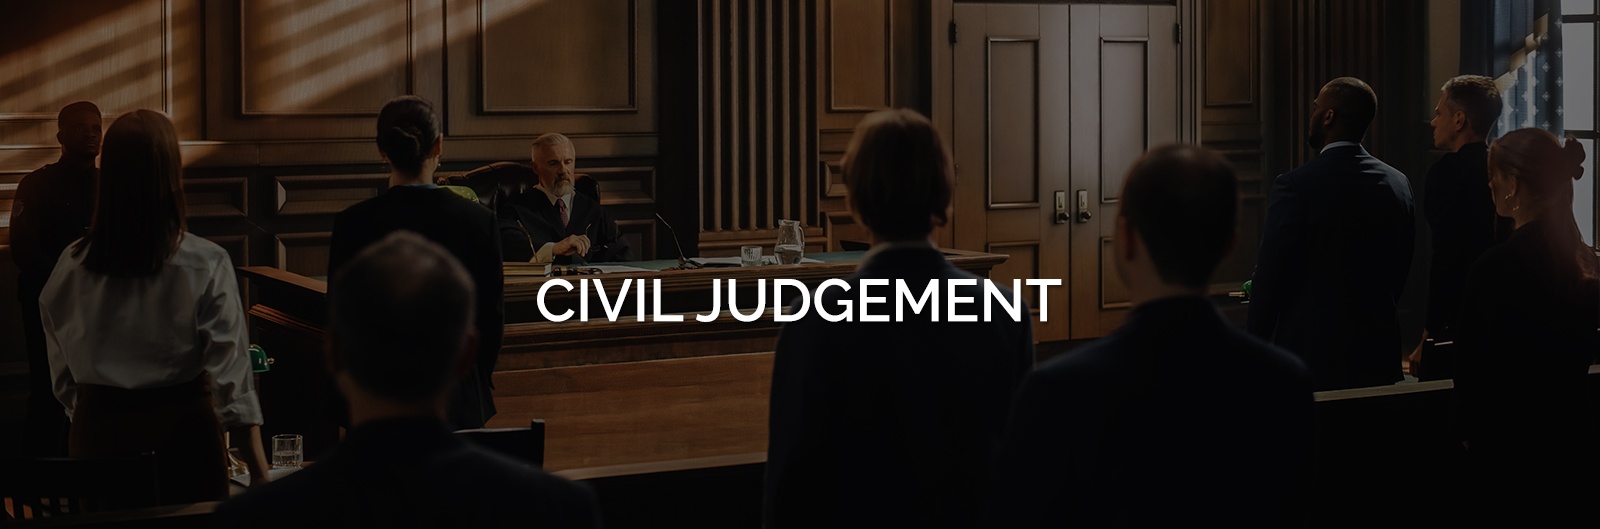 Civil Judgement St. Cloud Minnesota